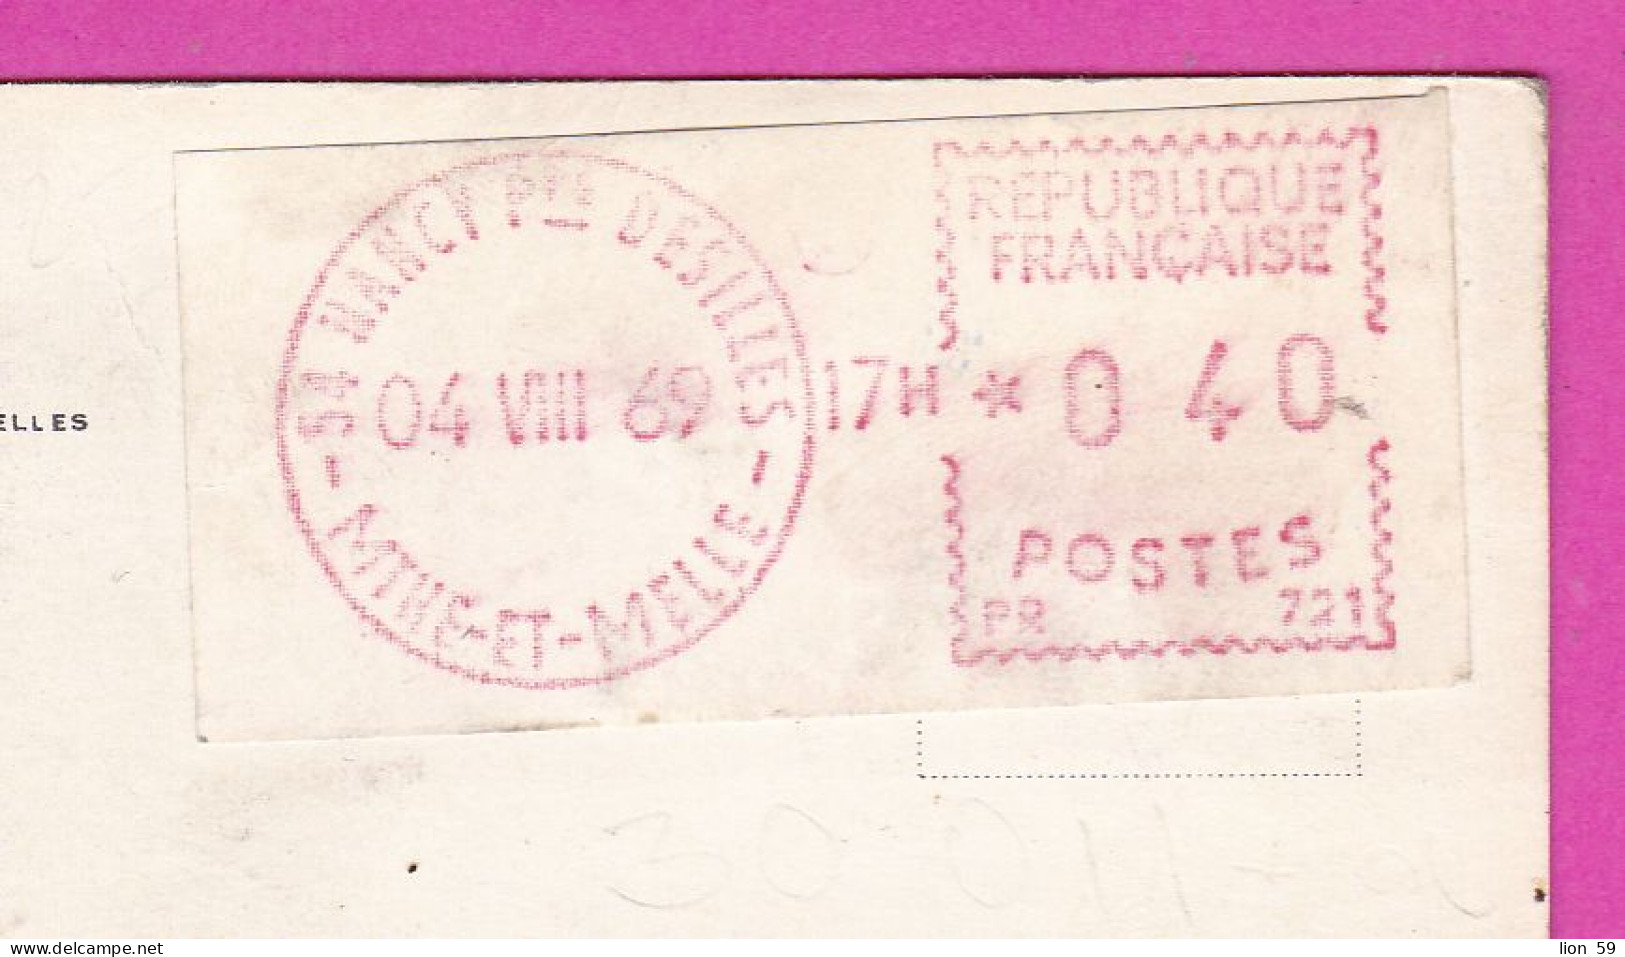 294104 / France - PARIS Place De L'Opéra PC 1969 NANCY Desilles USED 0.40 Fr. - 04.08.1969 Machine Stamps (ATM) - 1969 Montgeron – Wit Papier – Frama/Satas